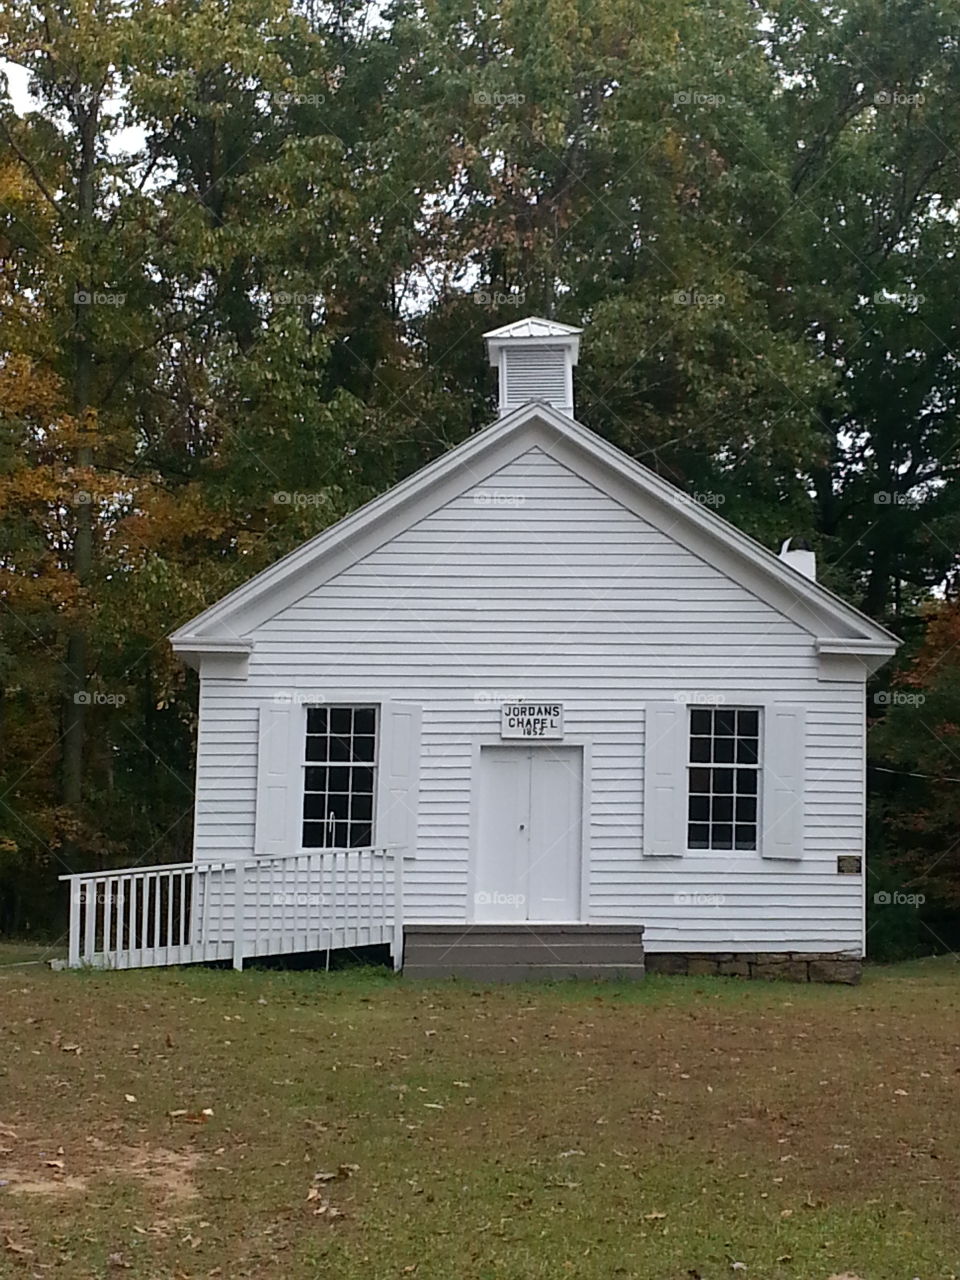 Jordan's Chapel. Jordan's Chapel West Virginia 